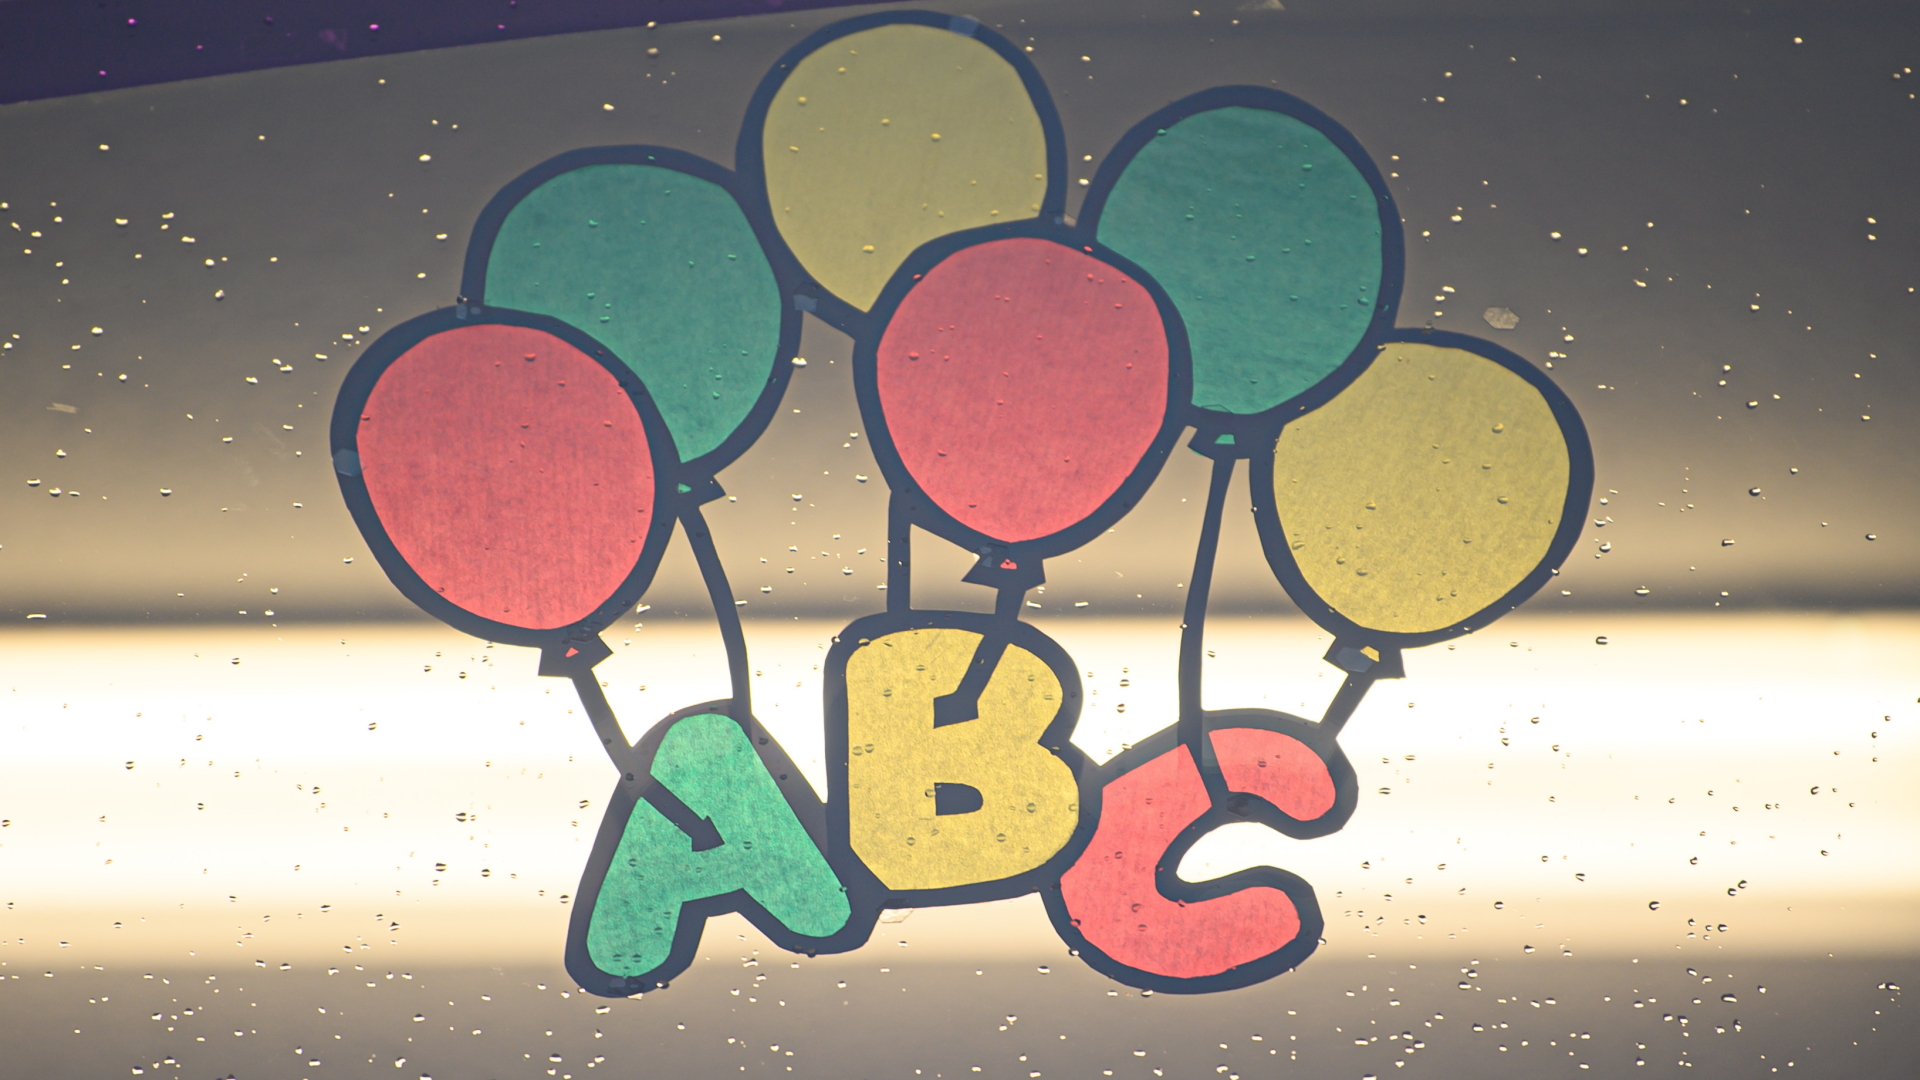 Eine bunte Zeichnung mit den Buchstaben "ABC" und Luftballons klebt an einem Schulfenster. | dpa